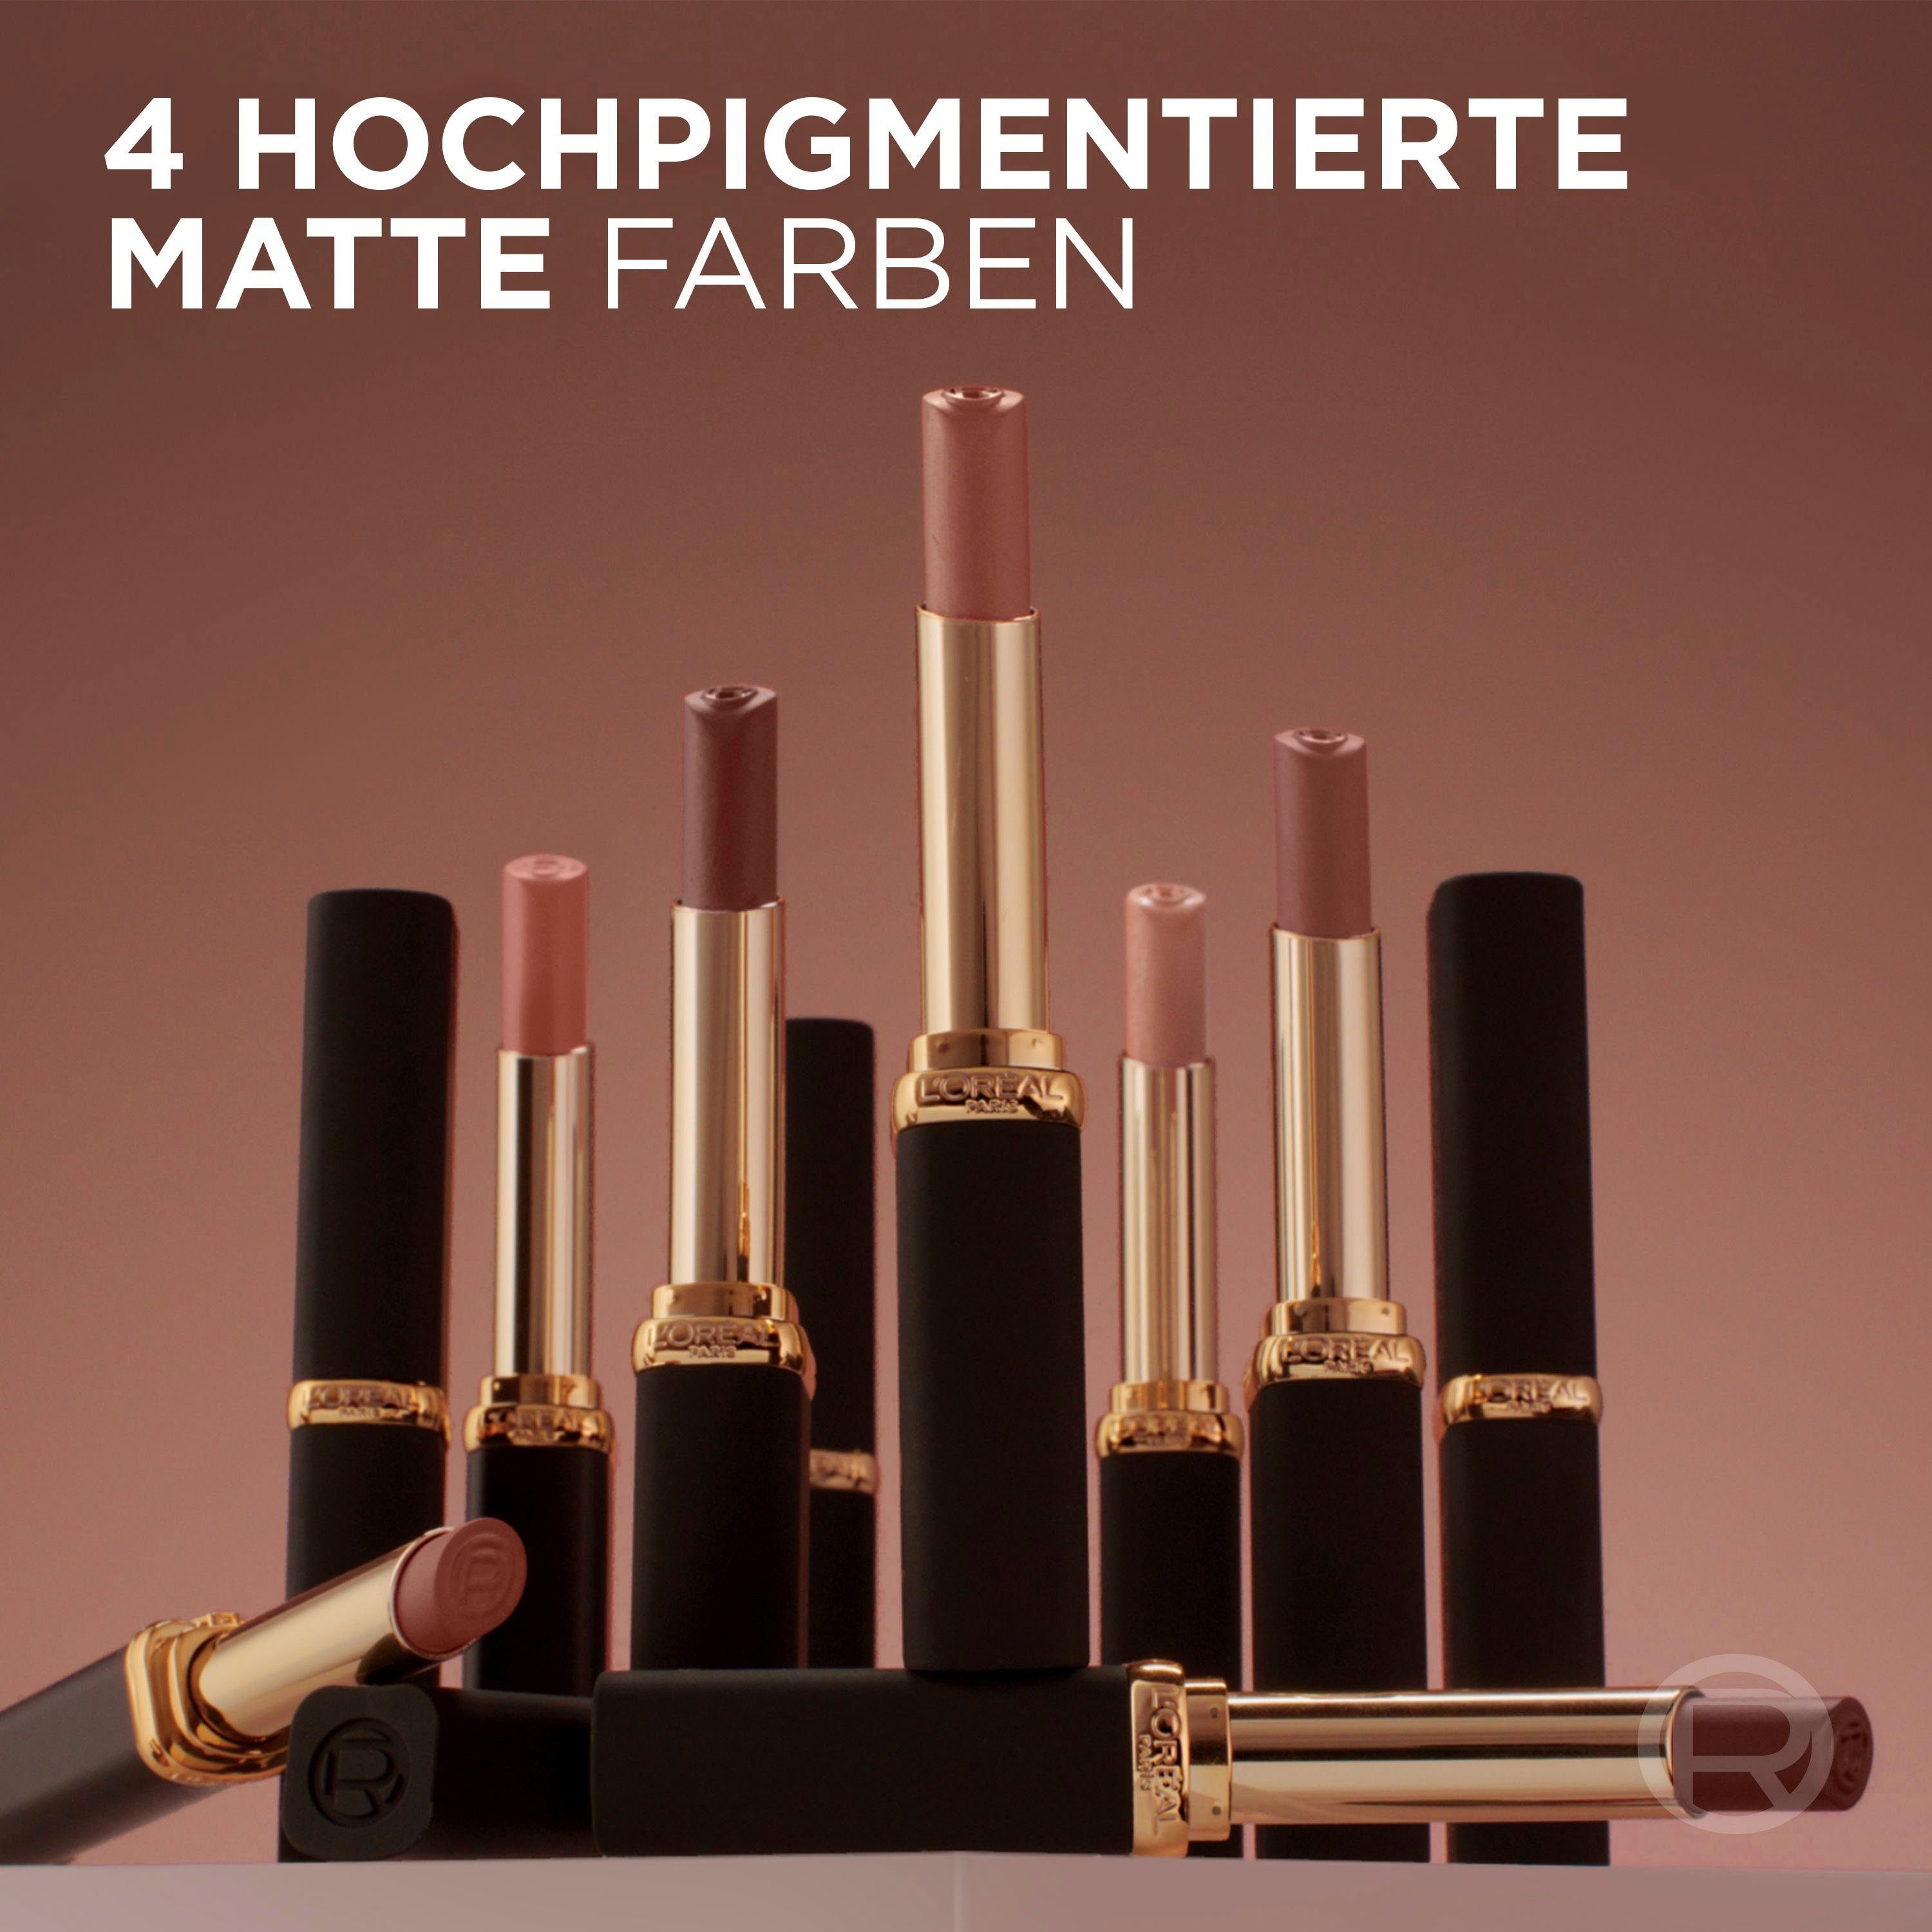 L'ORÉAL PARIS Lippenstift Color Volume Riche Intense mit Hyaluron Matte